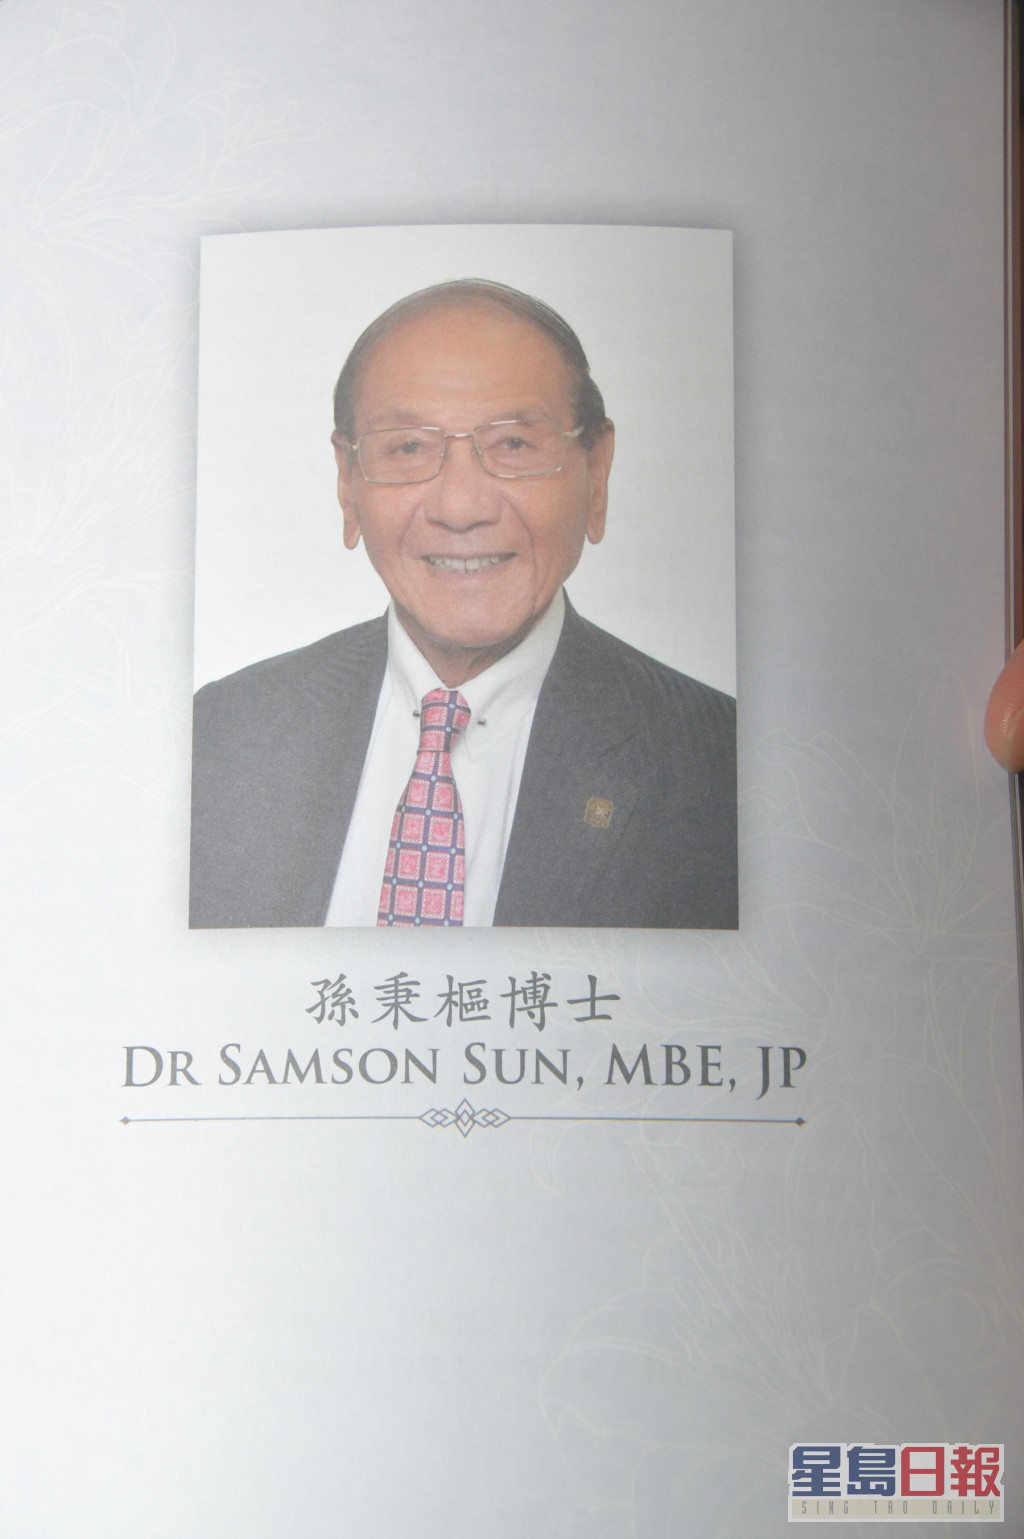 悼念册内印有孙博士的照片。